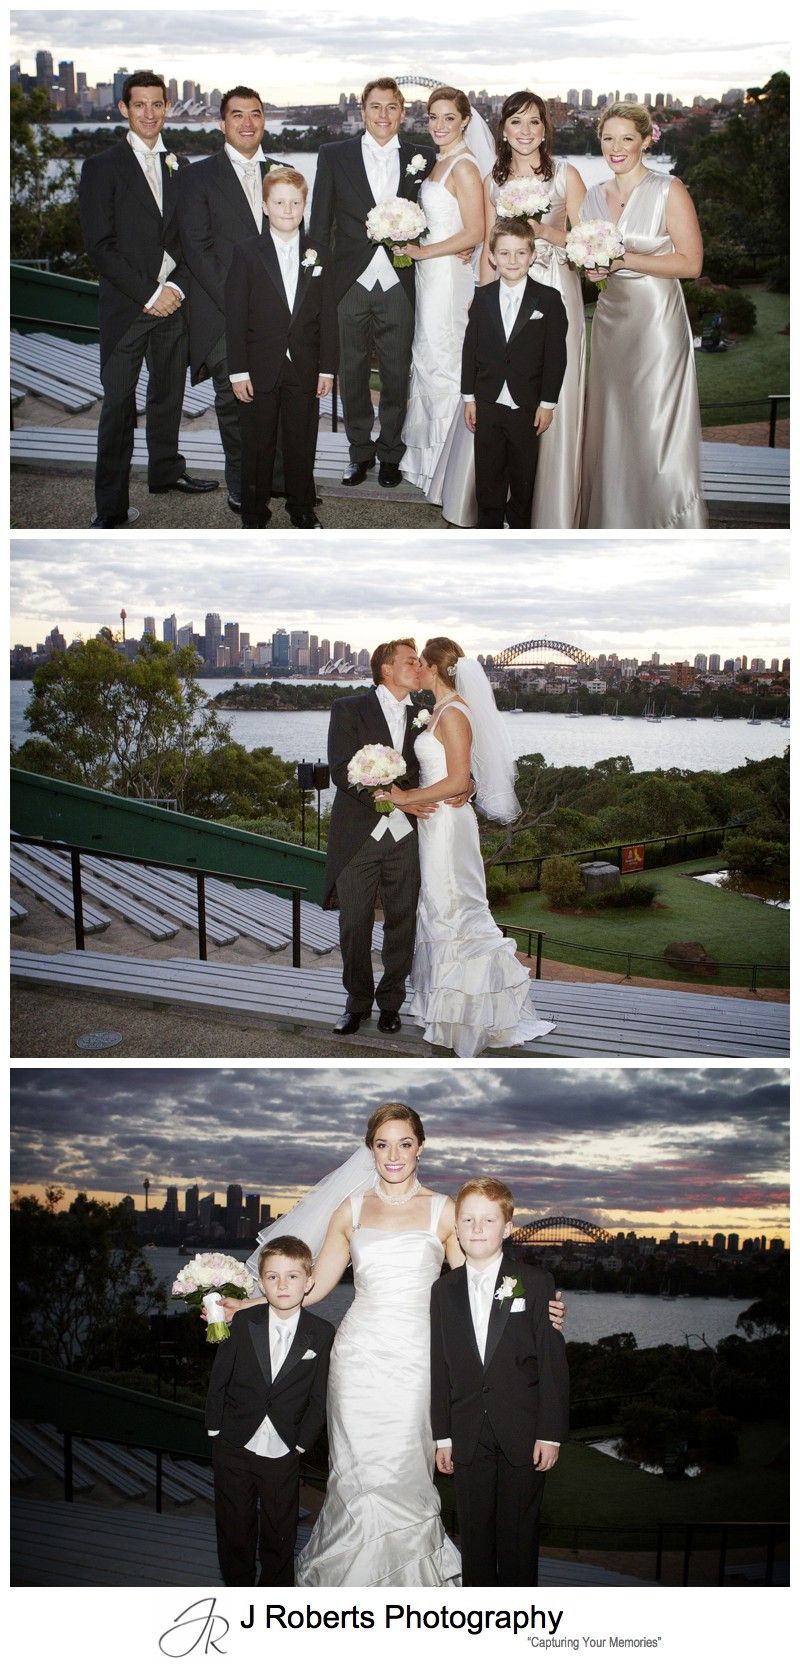 Sunset wedding photographs at Taronga Zoo Sydney - wedding photography sydney